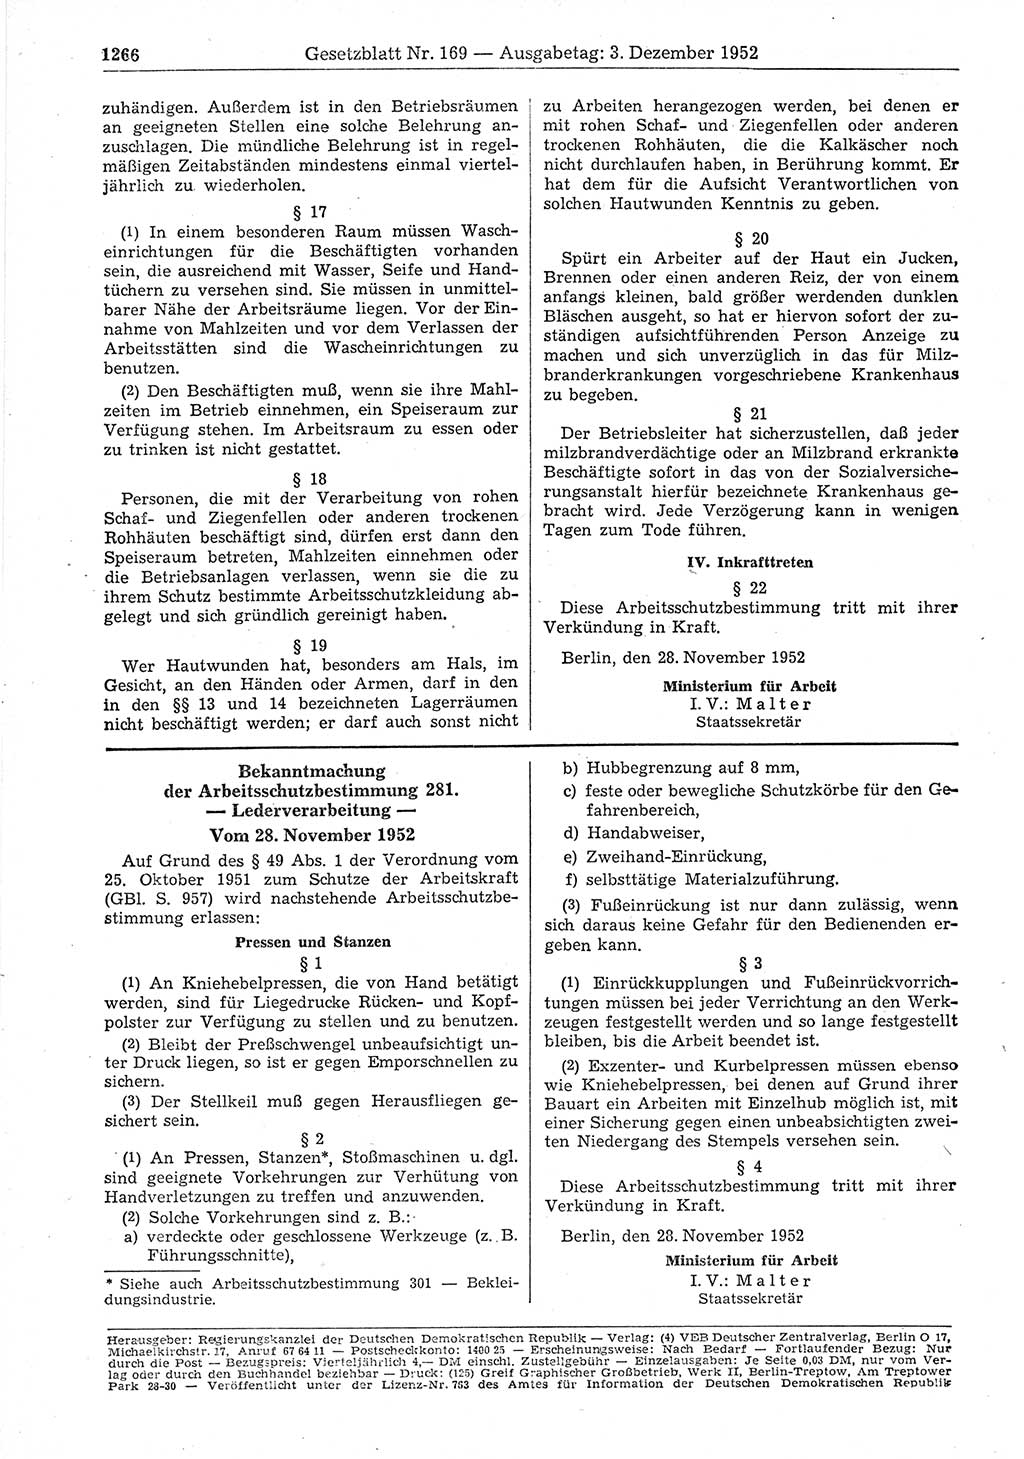 Gesetzblatt (GBl.) der Deutschen Demokratischen Republik (DDR) 1952, Seite 1266 (GBl. DDR 1952, S. 1266)